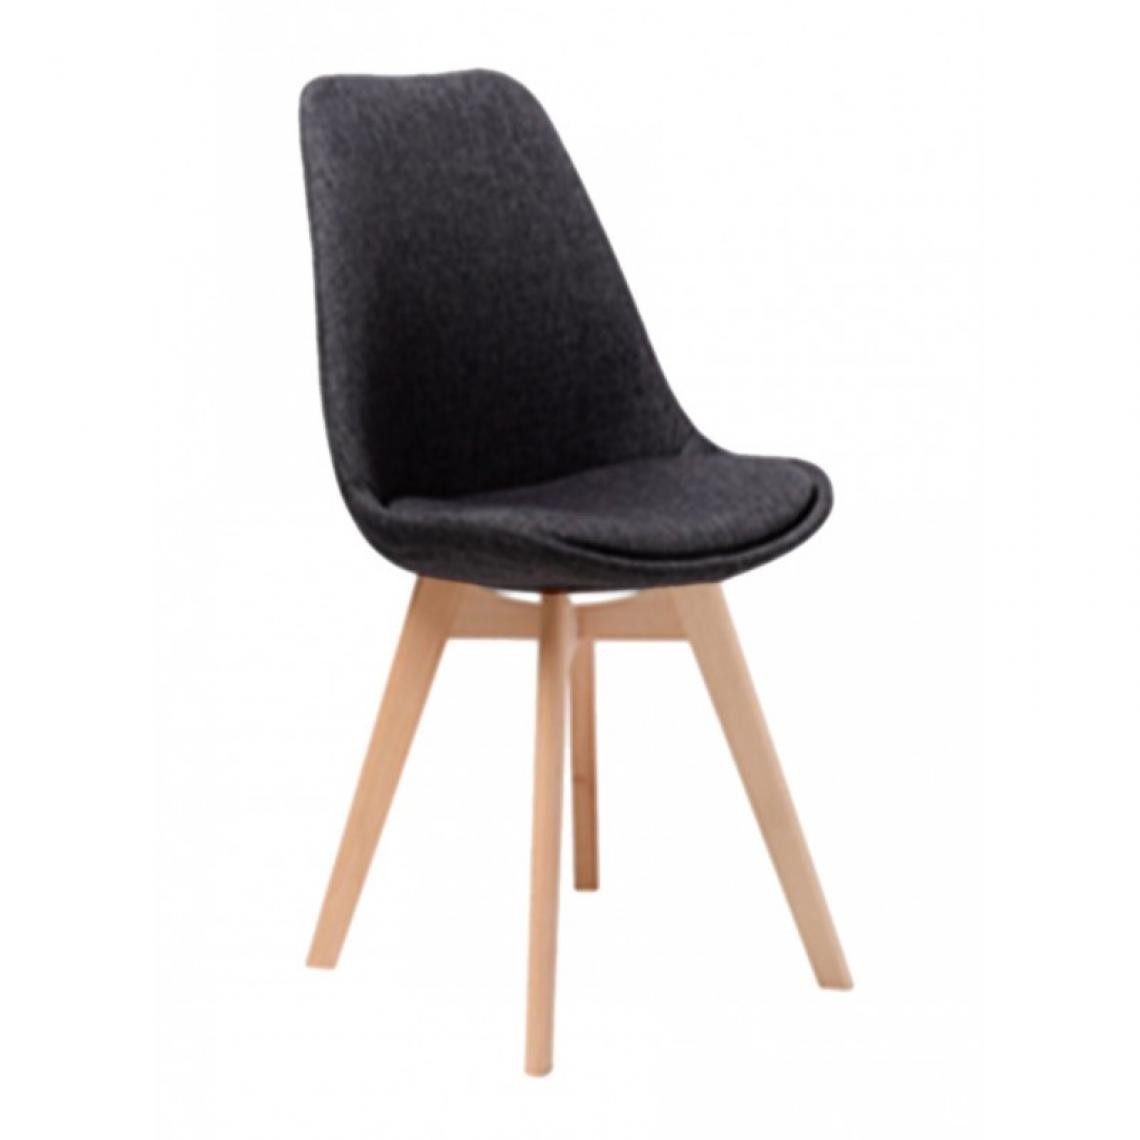 Webmarketpoint - Chaise noire design moderne pour bureau rembourré cm 54 x 48 x 84 h - Chaises